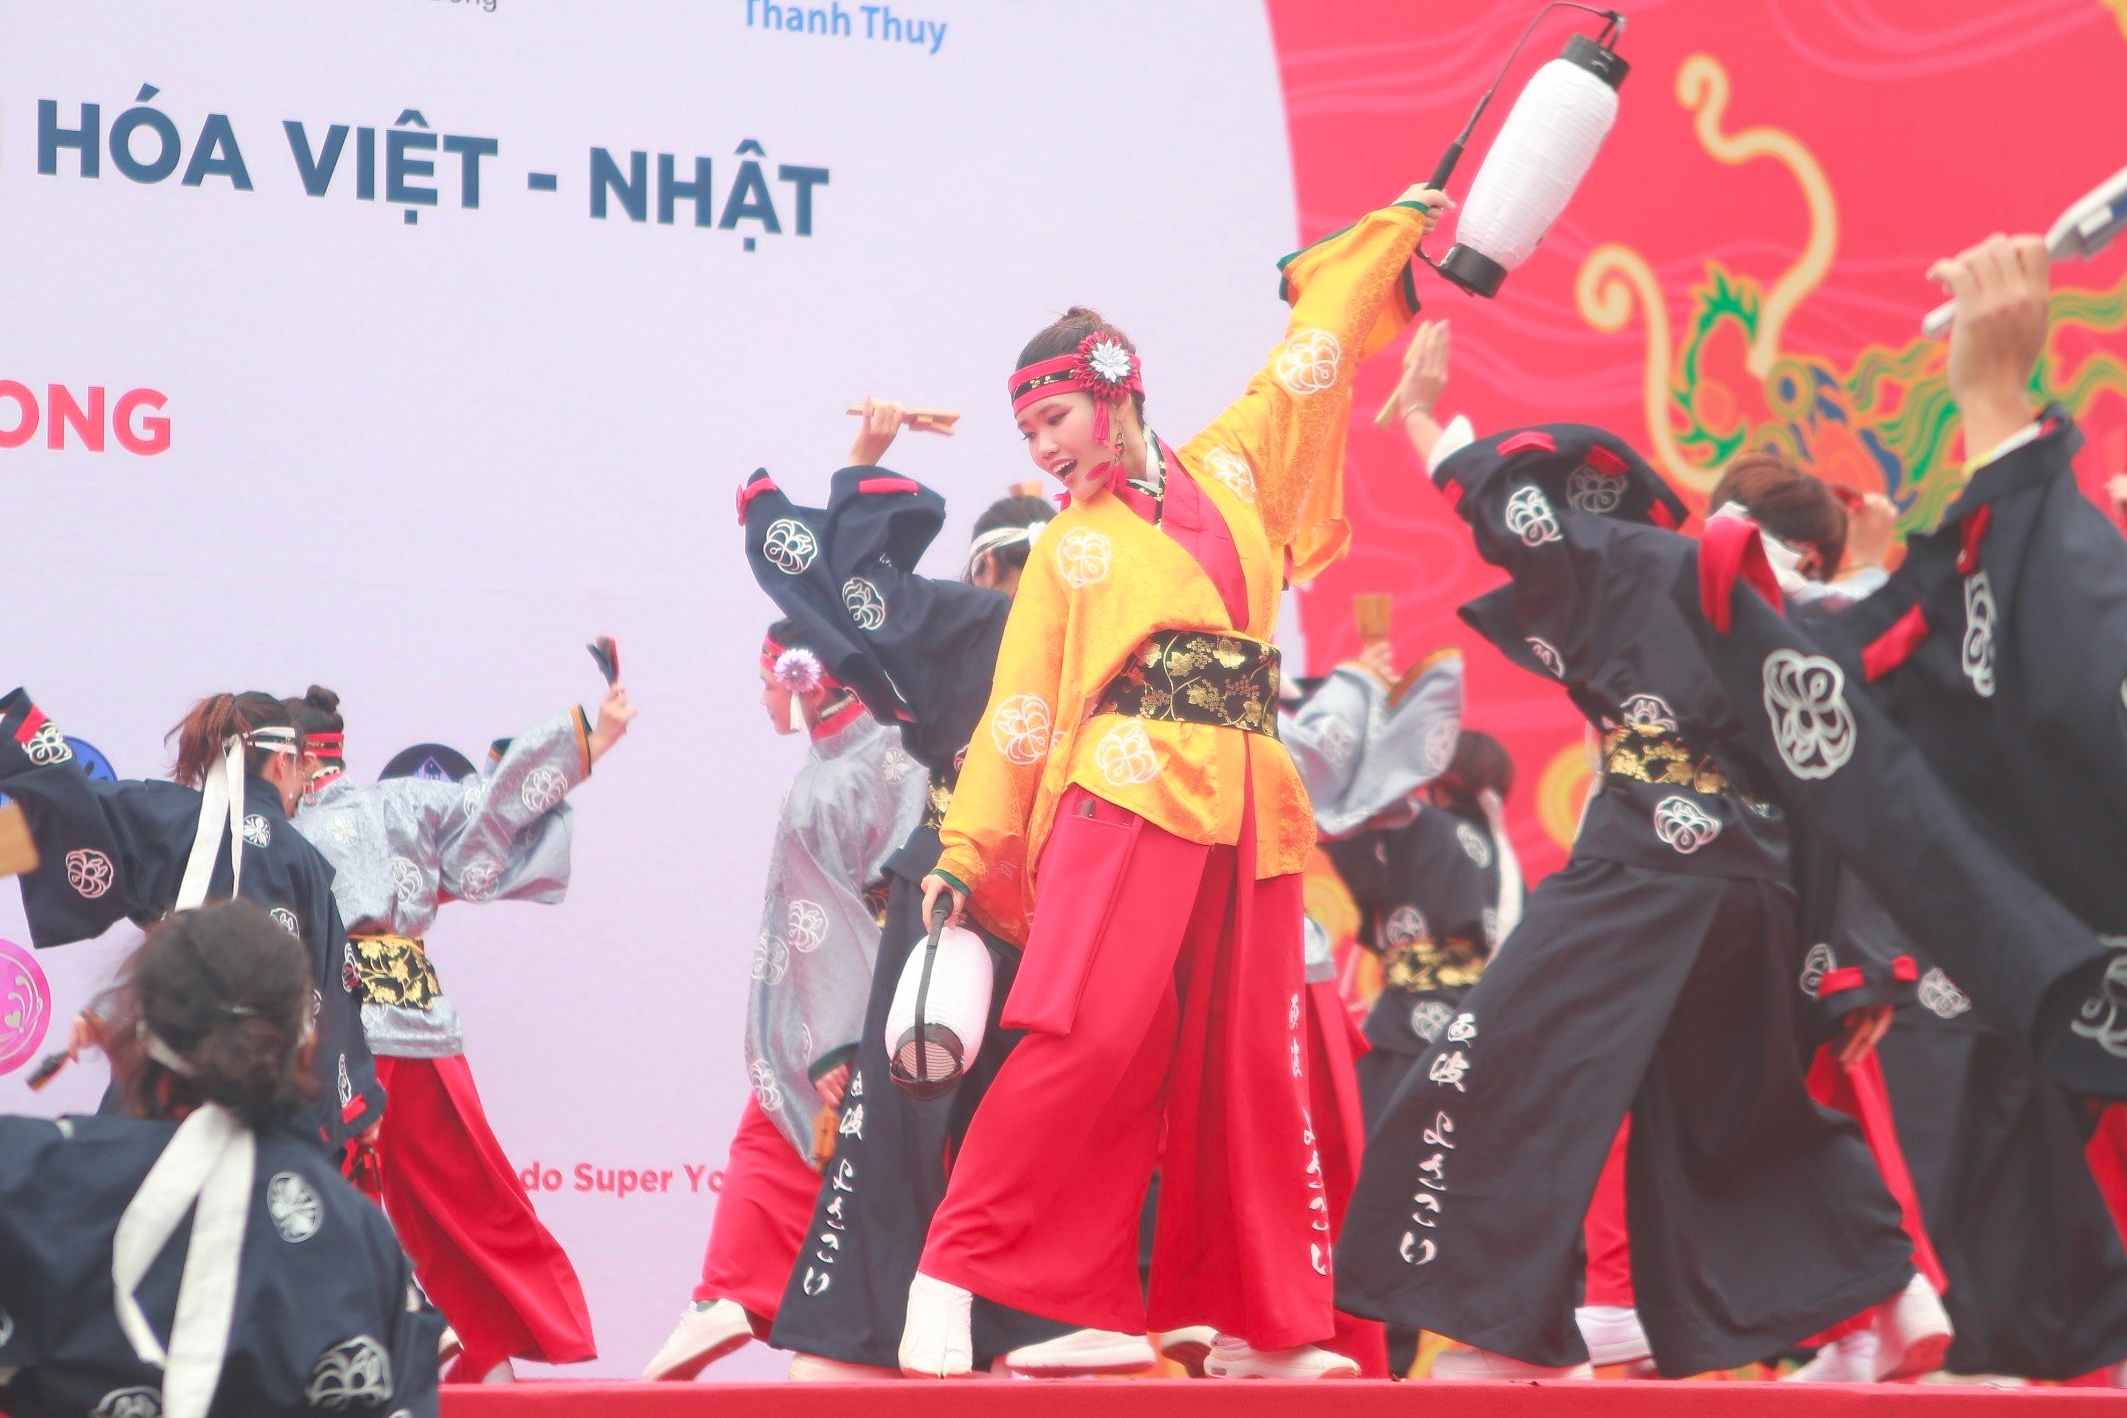 Điệu múa vui tươi bắt nguồn từ Nhật Bản được nhiều bạn trẻ Việt yêu thích. Ảnh: Thùy Trang